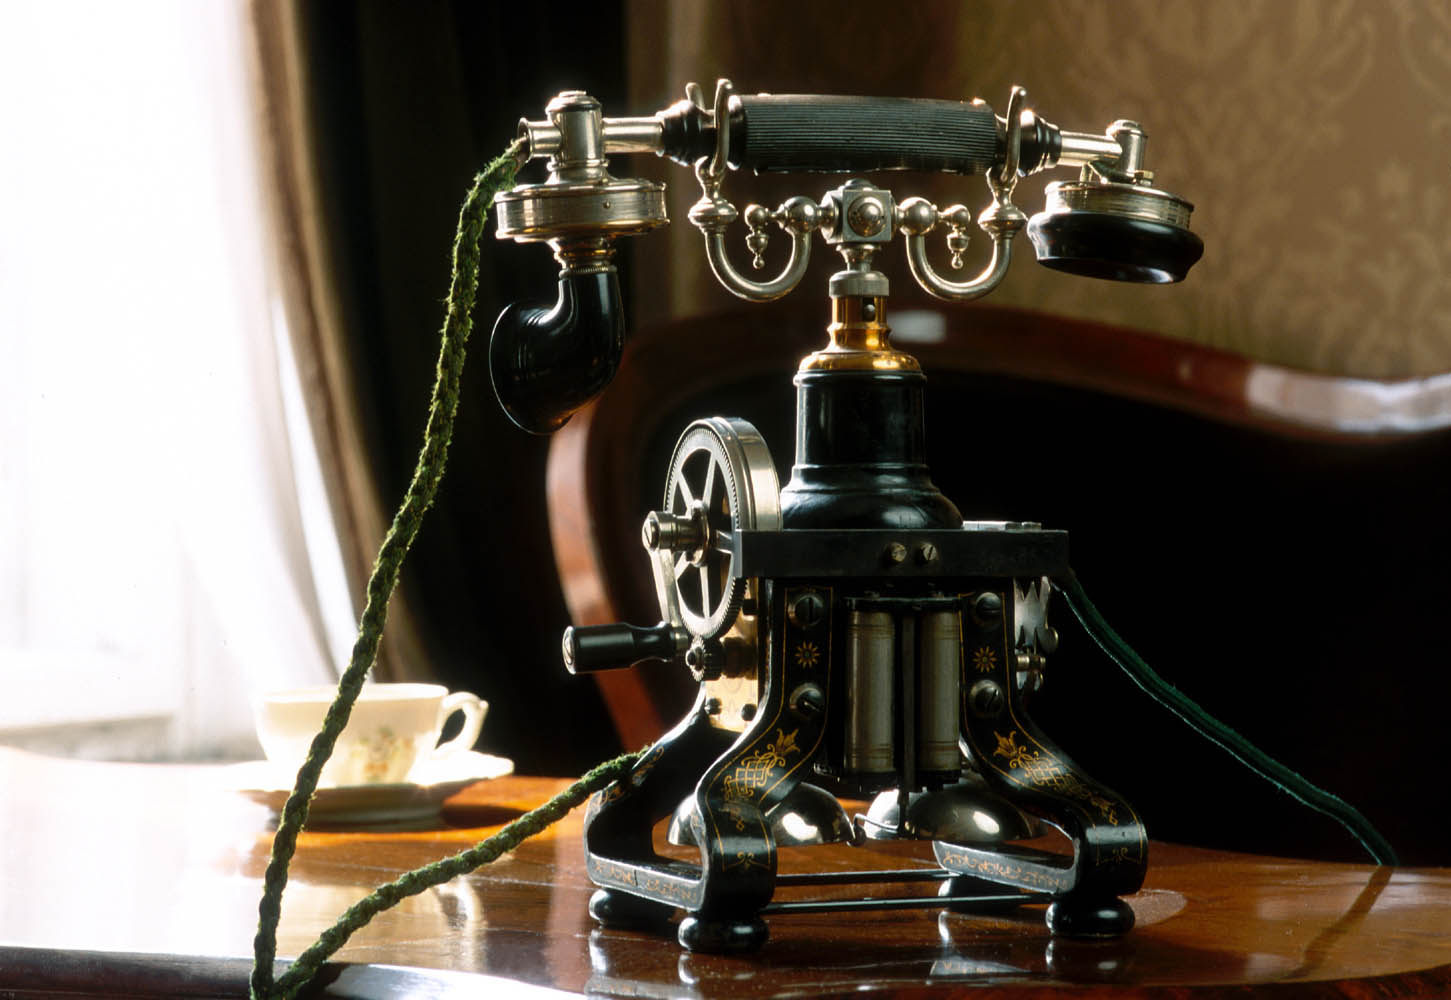 Widok aparatu telefonicznego z początku dwudziestego wieku, w którym połączenie wywoływało się poprzez pokręcenie korbki i rozmowę z telefonistą, który łączył z odpowiednim abonentem.